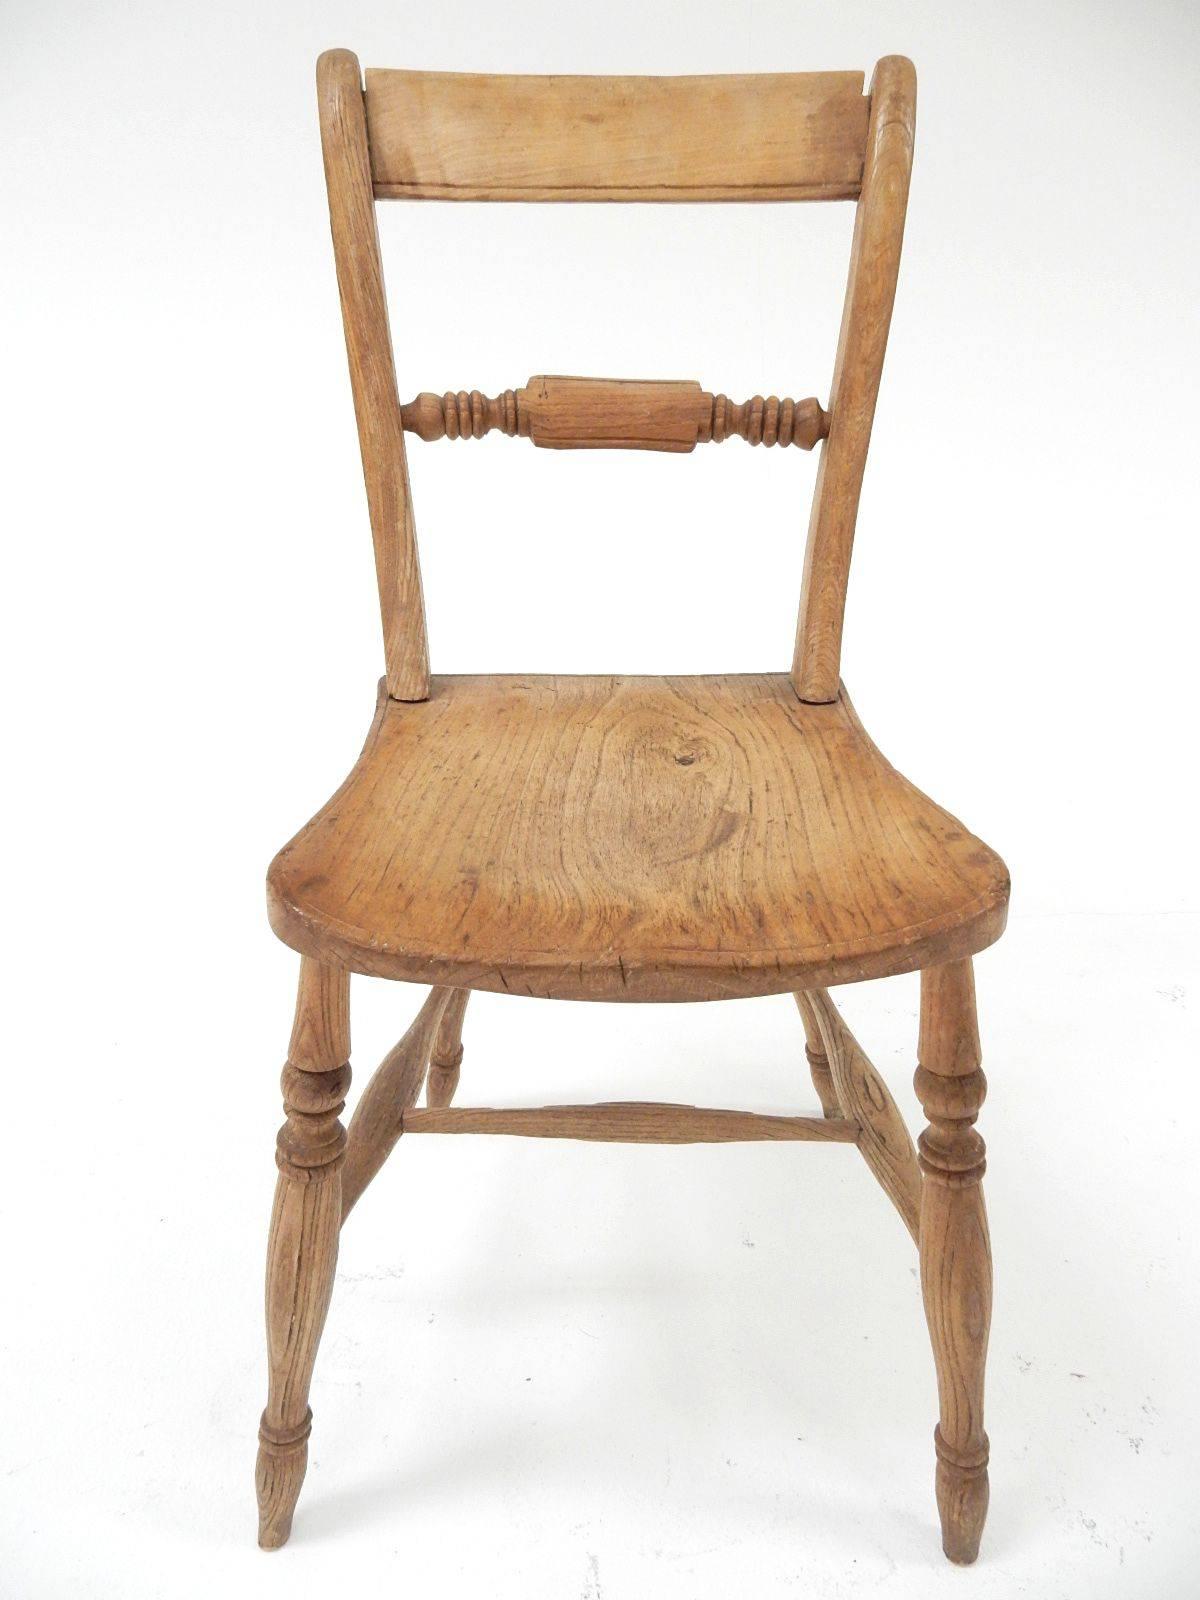 Victorian Victoria Regina Era Rustic English Original Farm Chairs For Sale